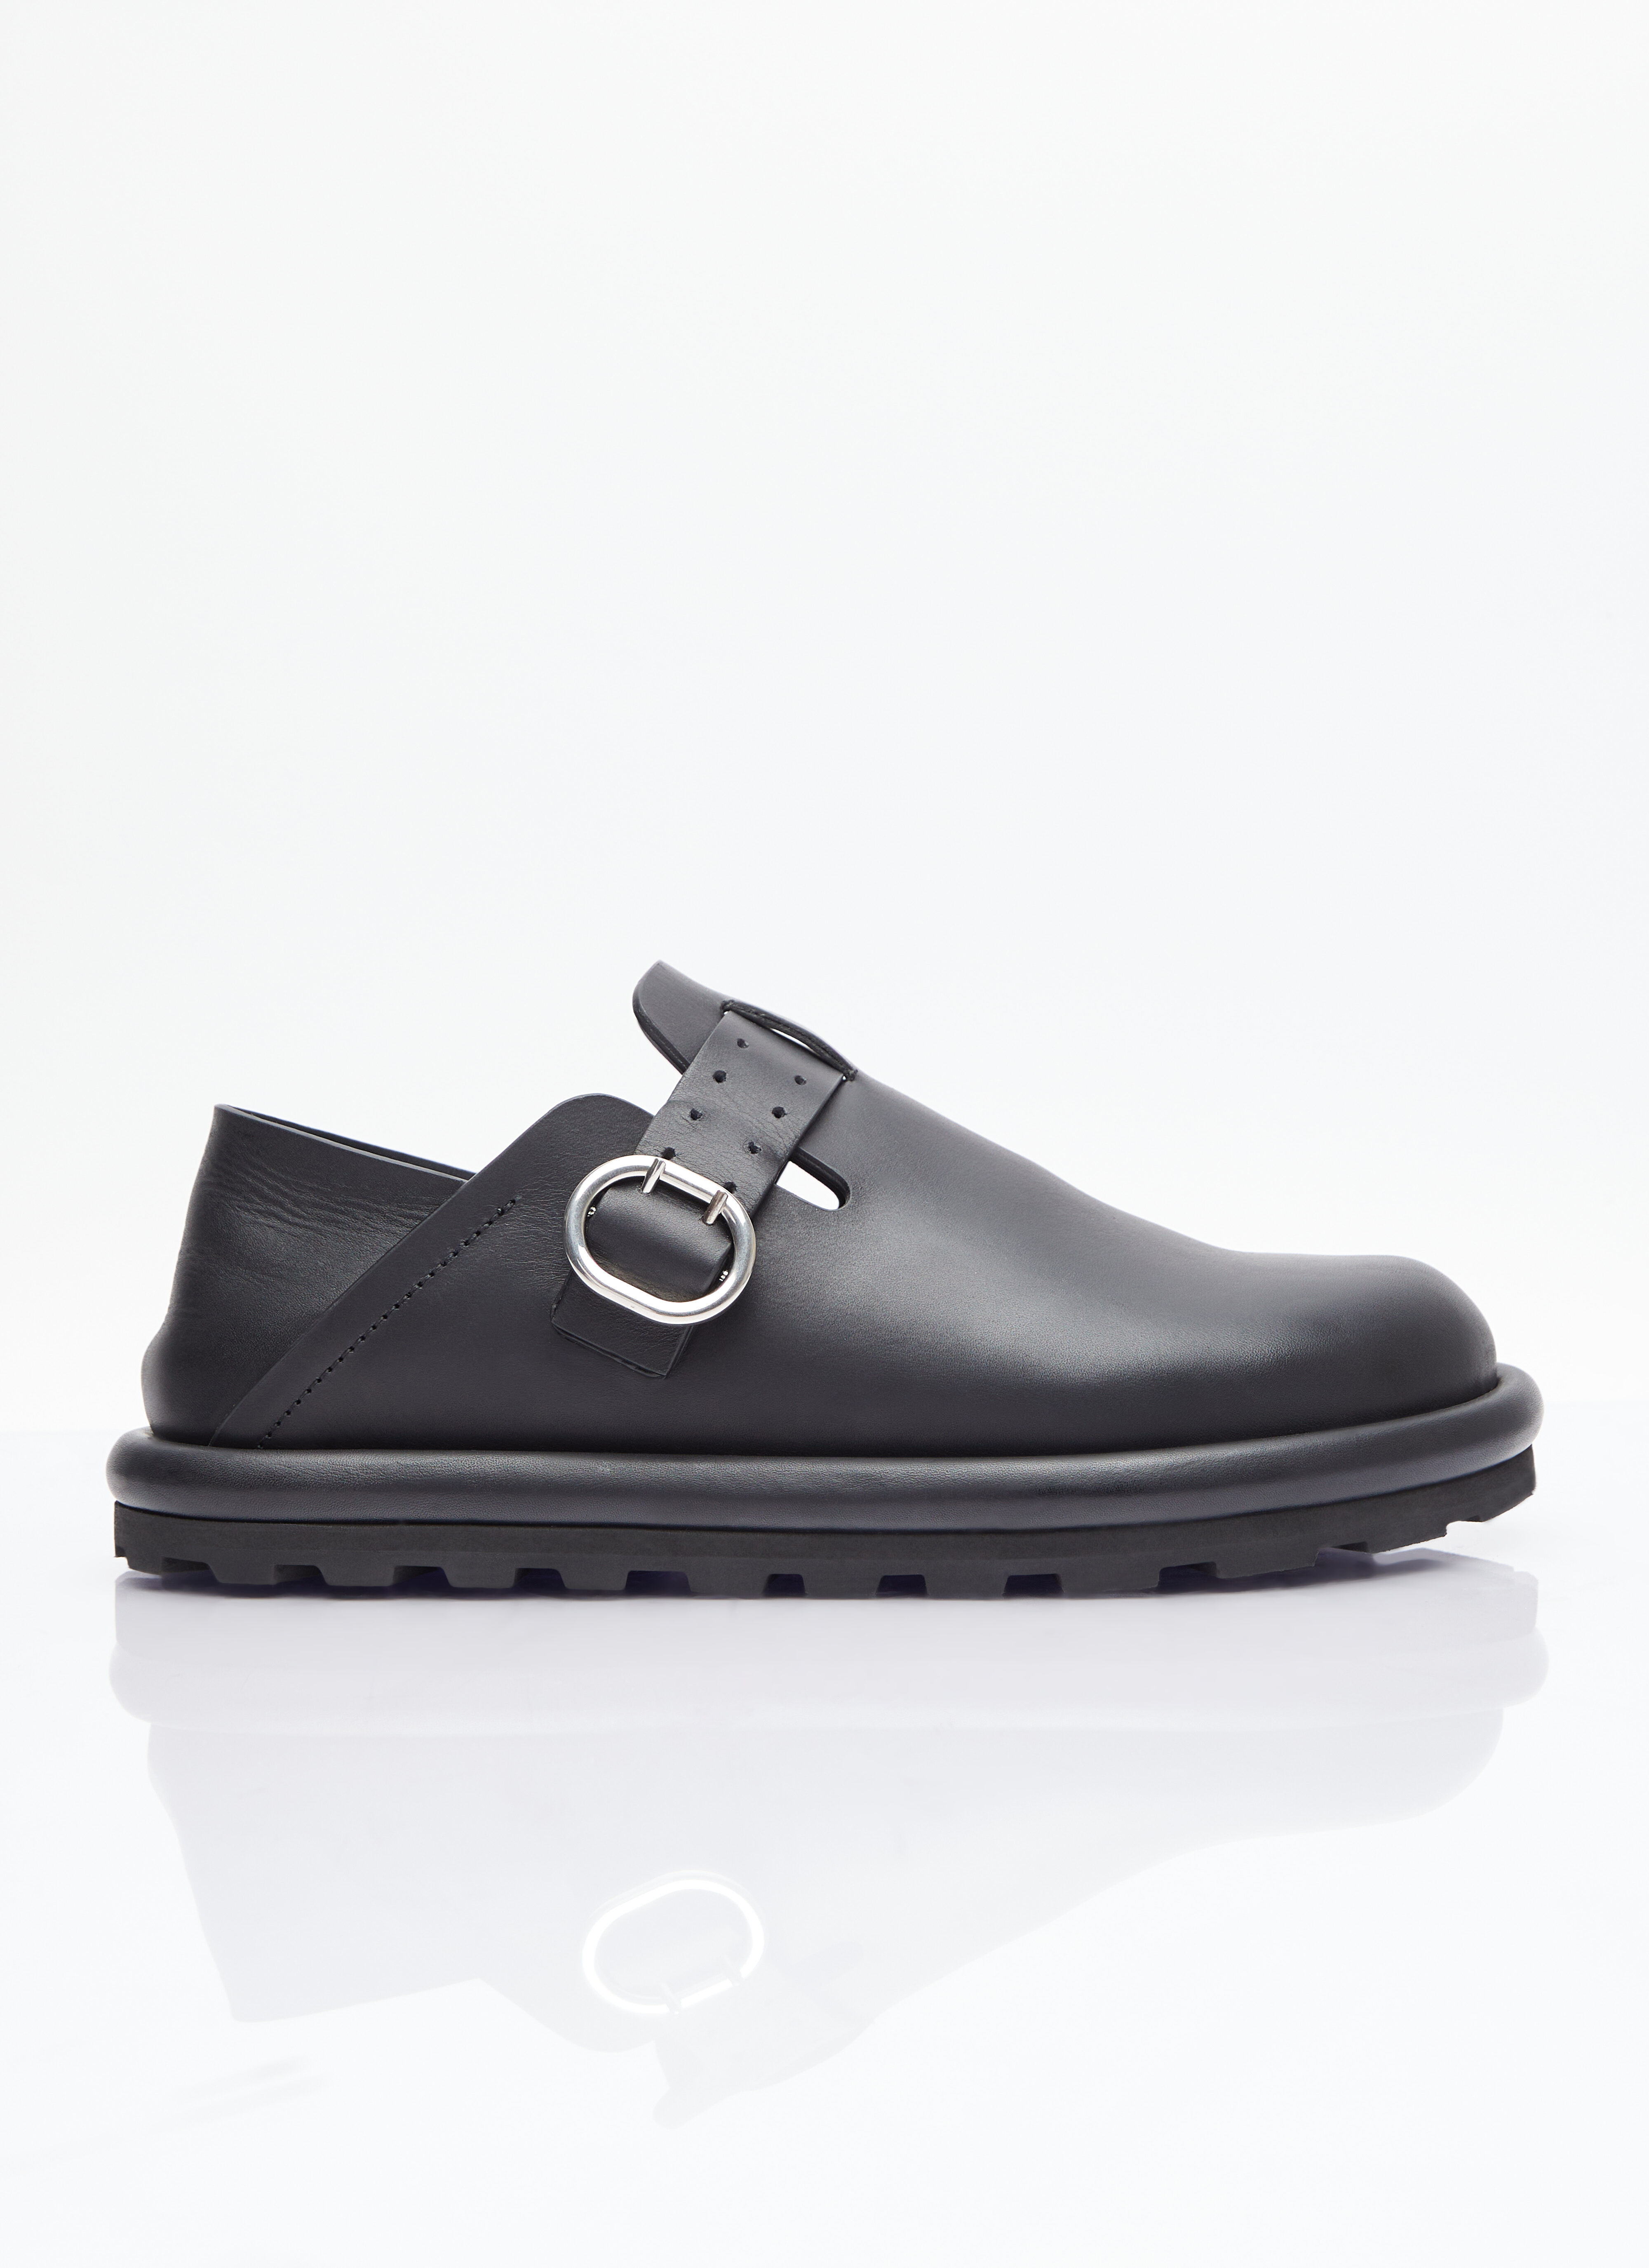 Jil Sander Buckle Leather Shoes Beige jil0156003